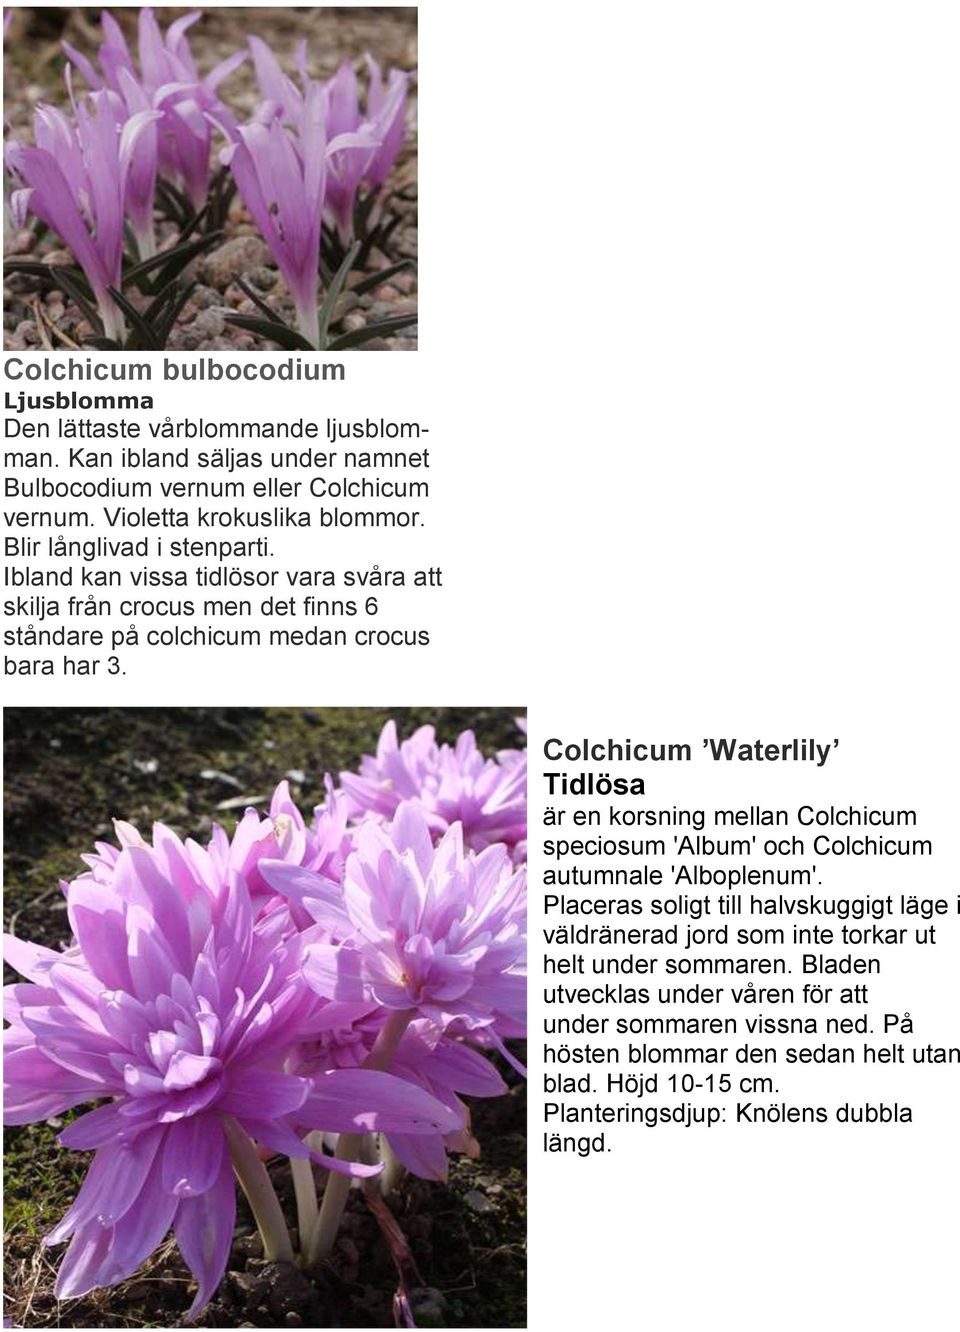 Colchicum Waterlily Tidlösa är en korsning mellan Colchicum speciosum 'Album' och Colchicum autumnale 'Alboplenum'.